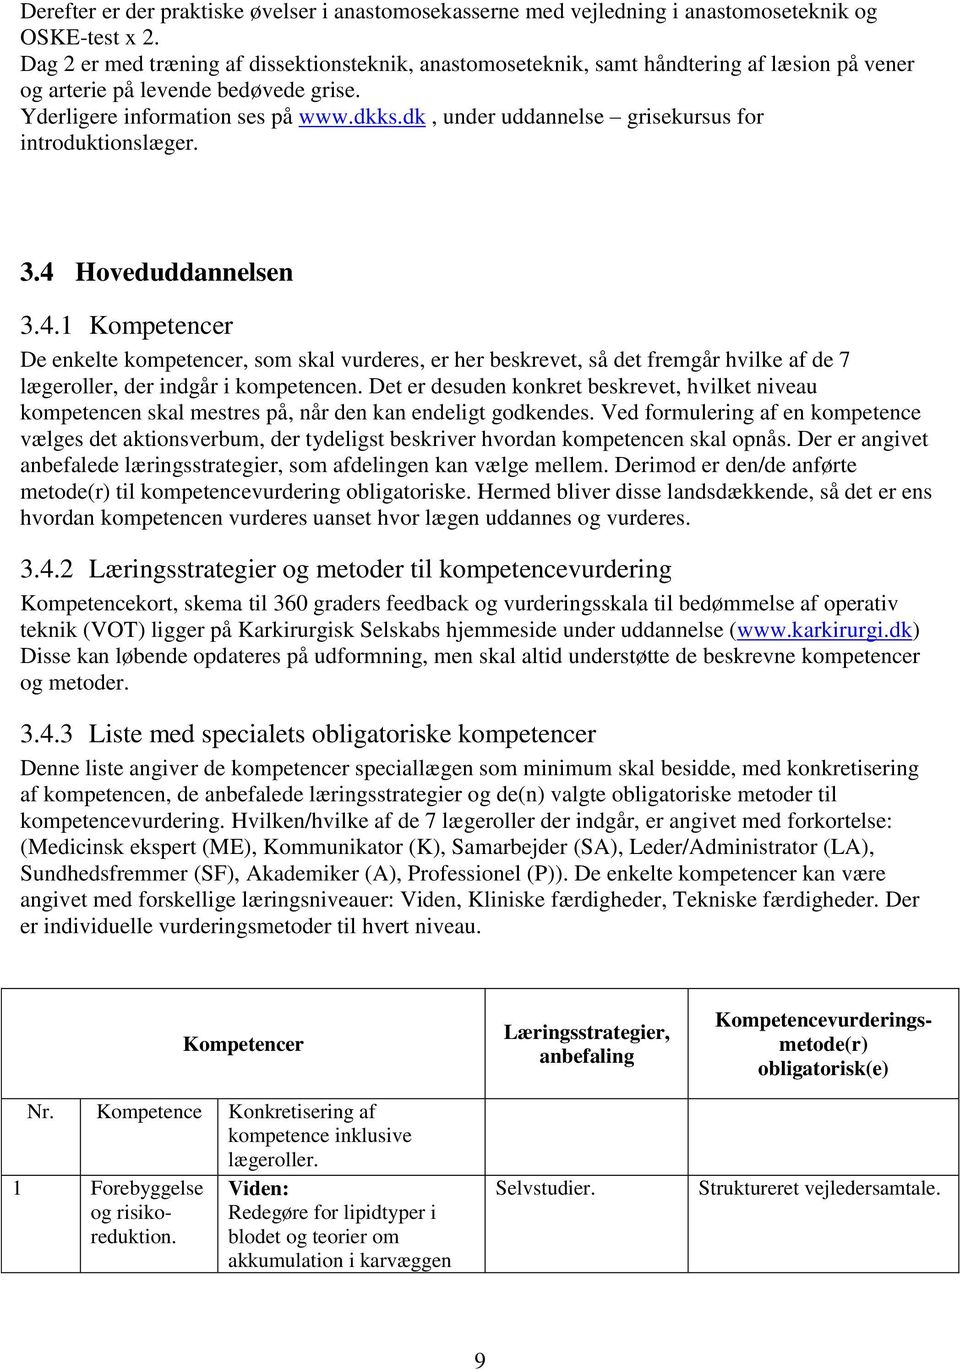 dk, under uddannelse grisekursus for introduktionslæger. 3.4 